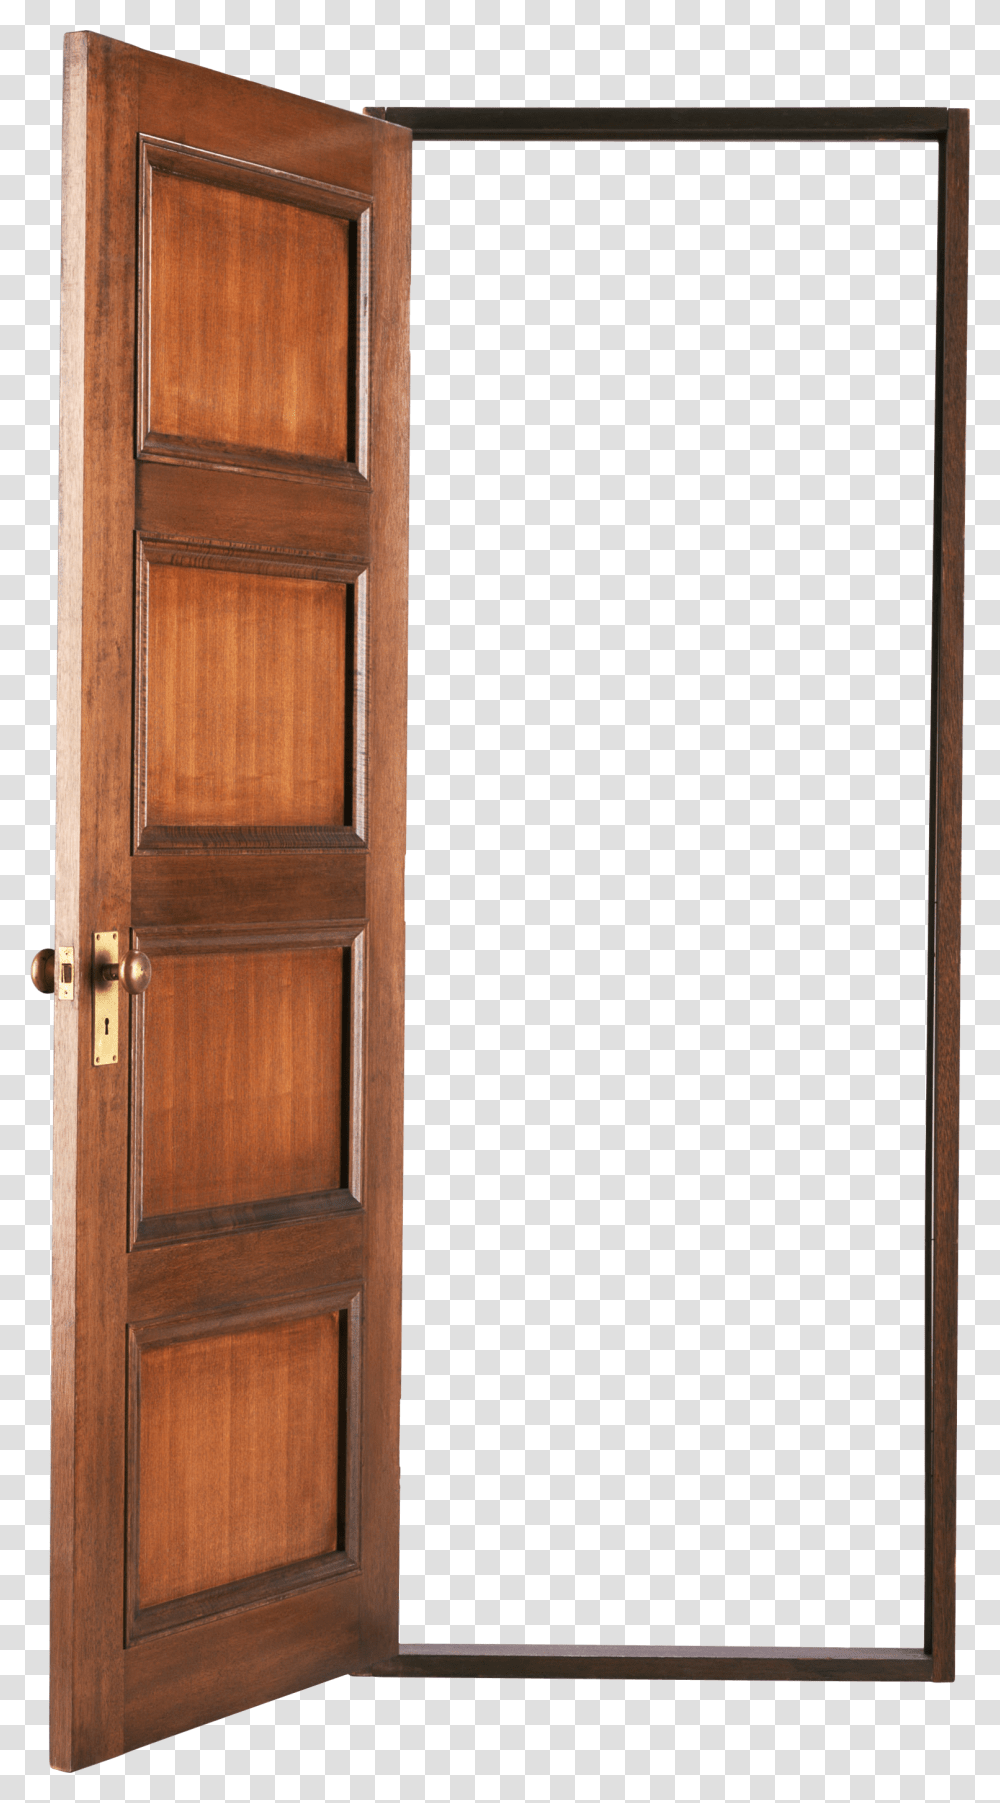 Door Images Wood Door Open Door, Hardwood, French Door, Stained Wood Transparent Png